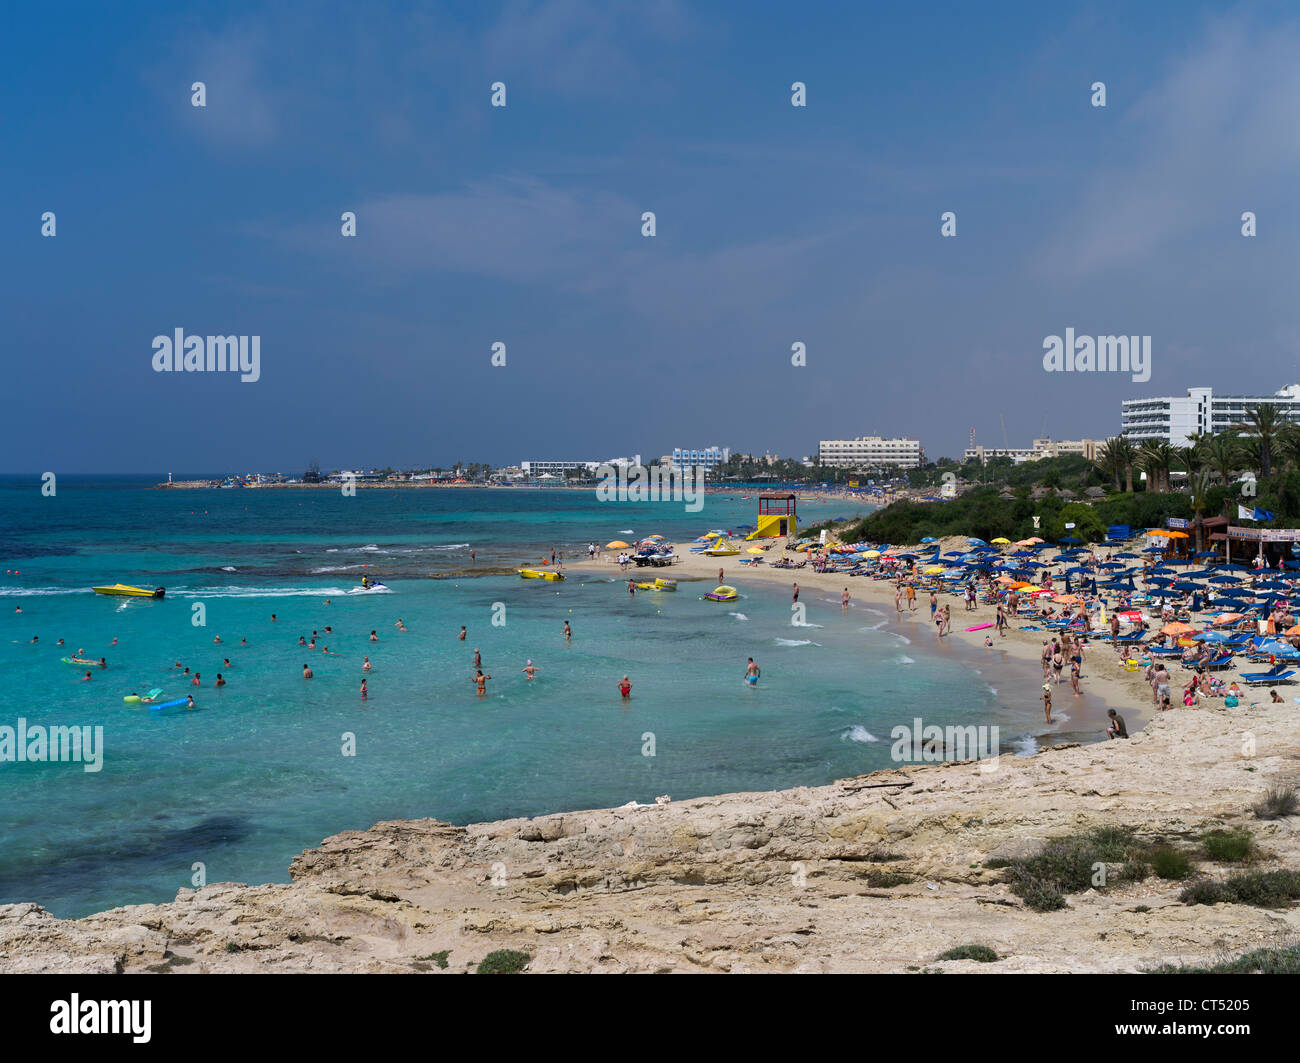 dh AYIA NAPA CIPRO SUD bagnanti spiaggia sabbiosa e alberghi grecia vacanze baia persone vacanza Foto Stock